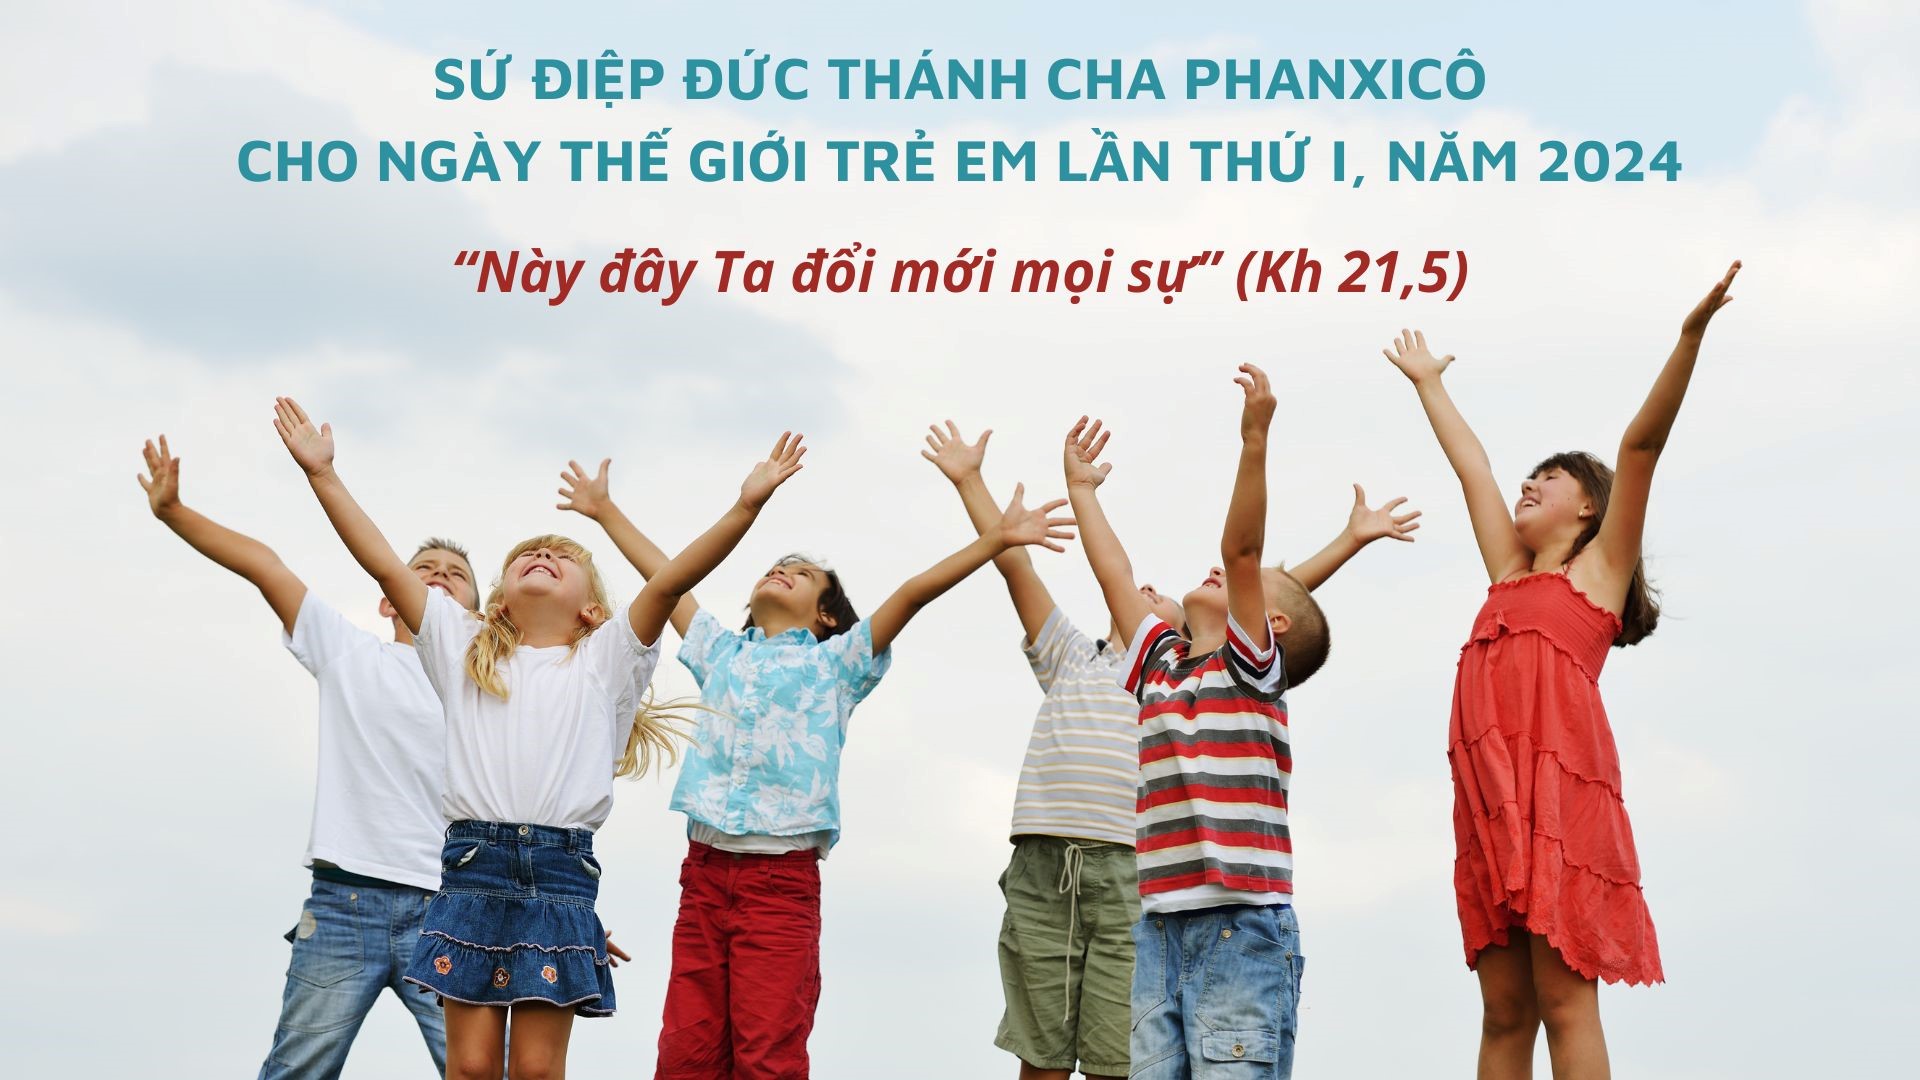 Sứ điệp Đức Thánh Cha cho Ngày Thế giới Trẻ em lần thứ I, năm 2024: “Này đây Ta đổi mới mọi sự”